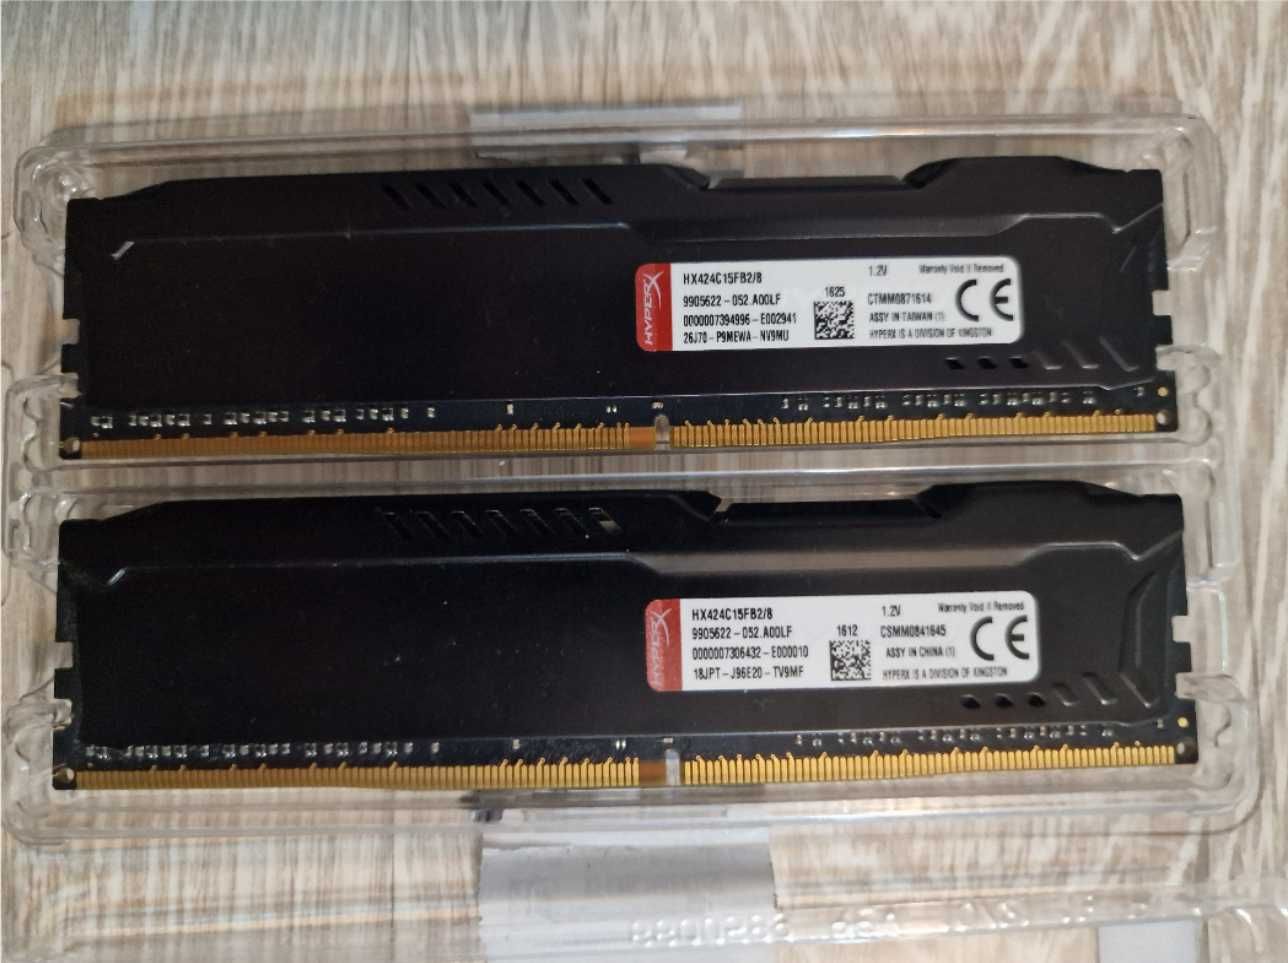 RAM DDR4 - Kingston Fury HyperX - 2x8GB (Dual-channel) 2400MHz CL15